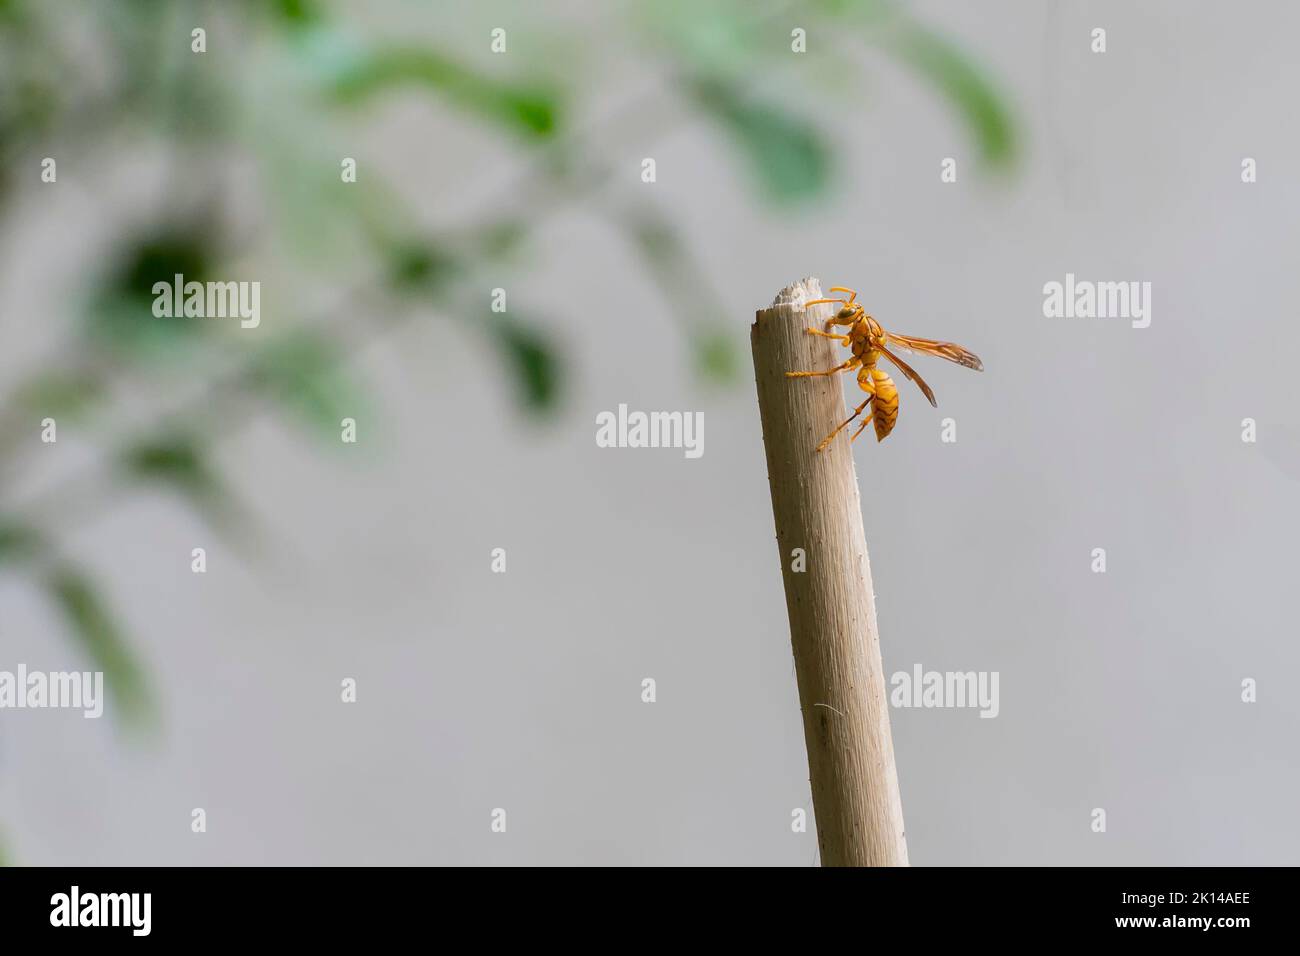 Vespola vulgaris, conosciuta come la vespa comune, appesa a un bastone in giardino fatto in casa. Howrah, Bengala Occidentale, India. Foto Stock